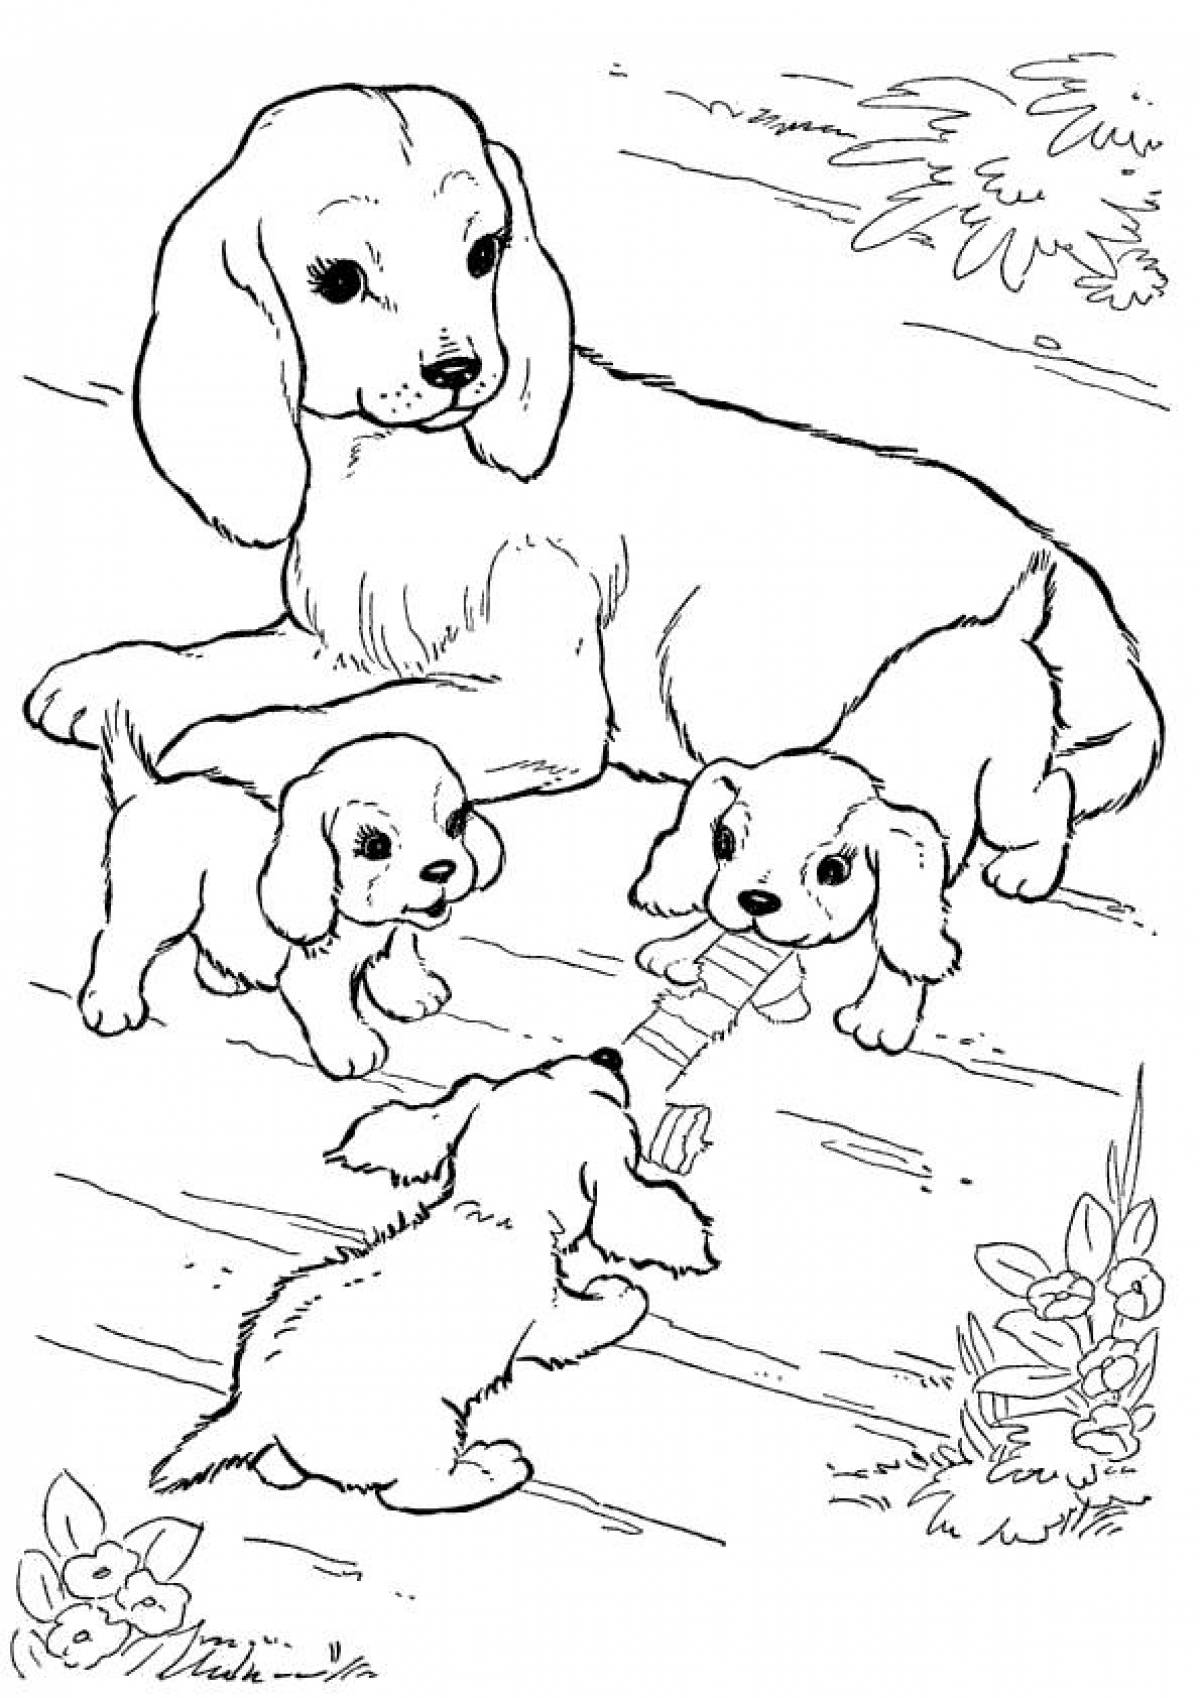 Раскраска Собака и два щенка, скачать и распечатать раскраску раздела Животные и их детеныши